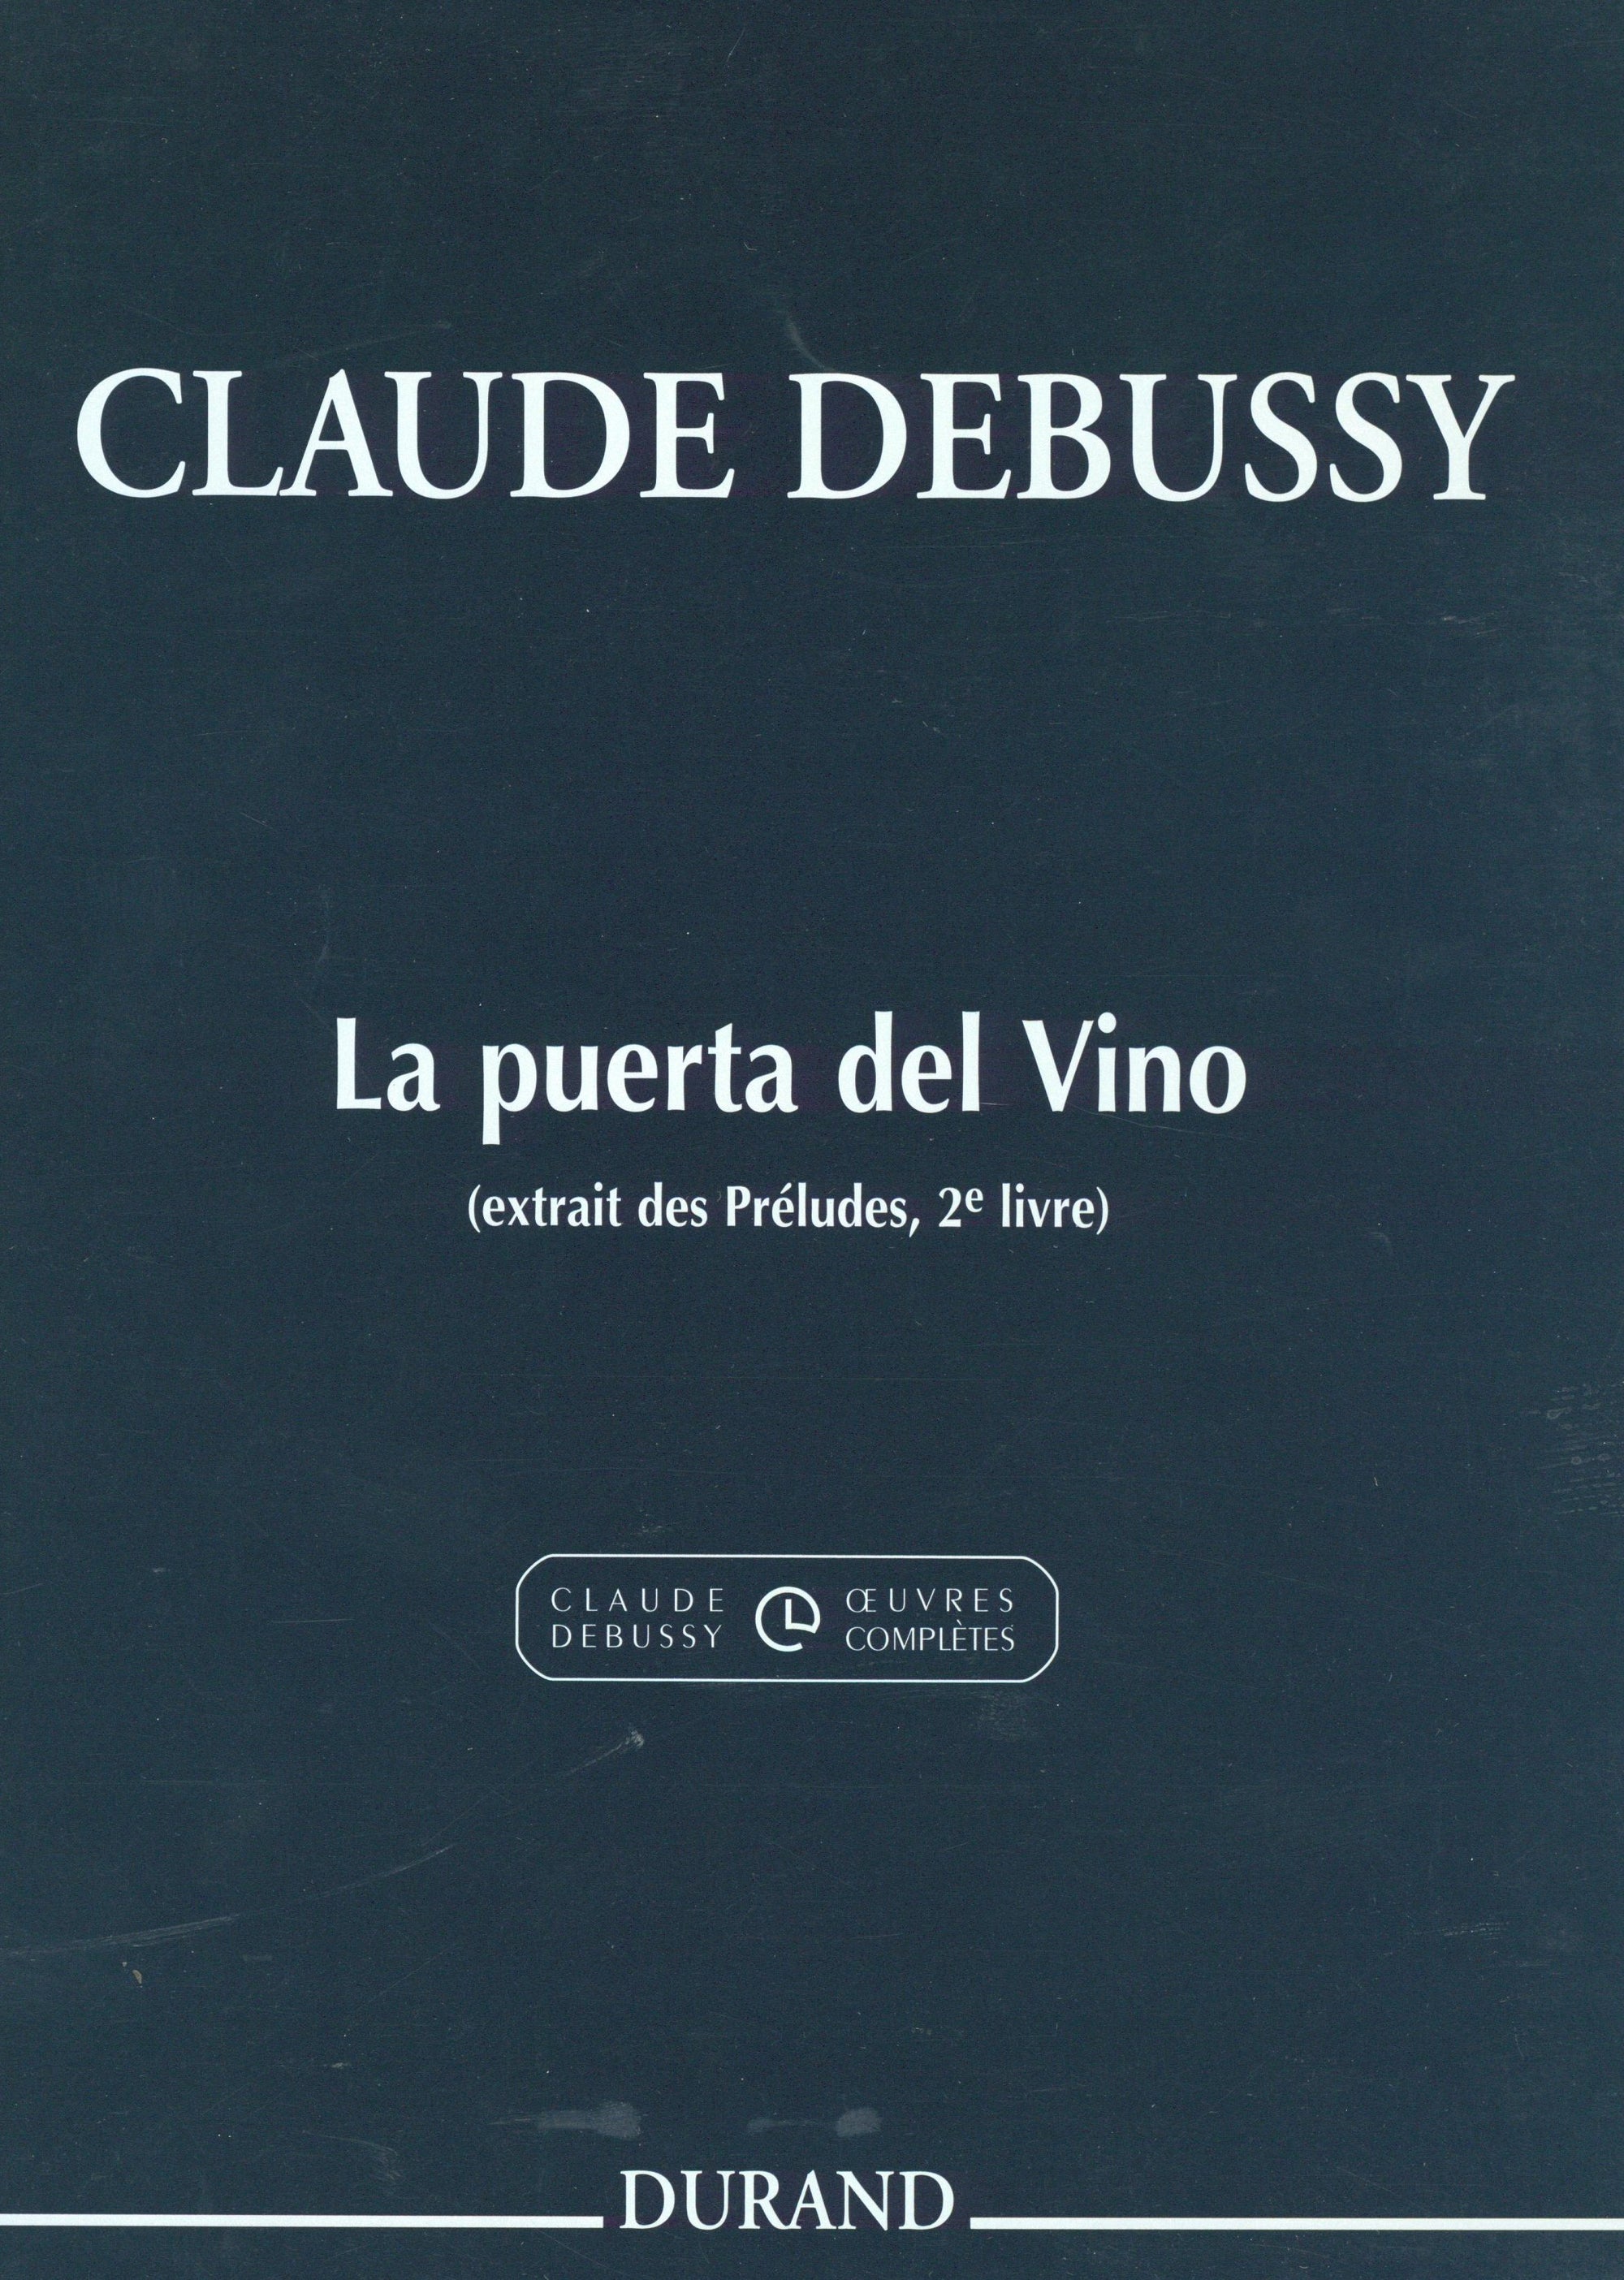 Debussy: La puerta del VIno